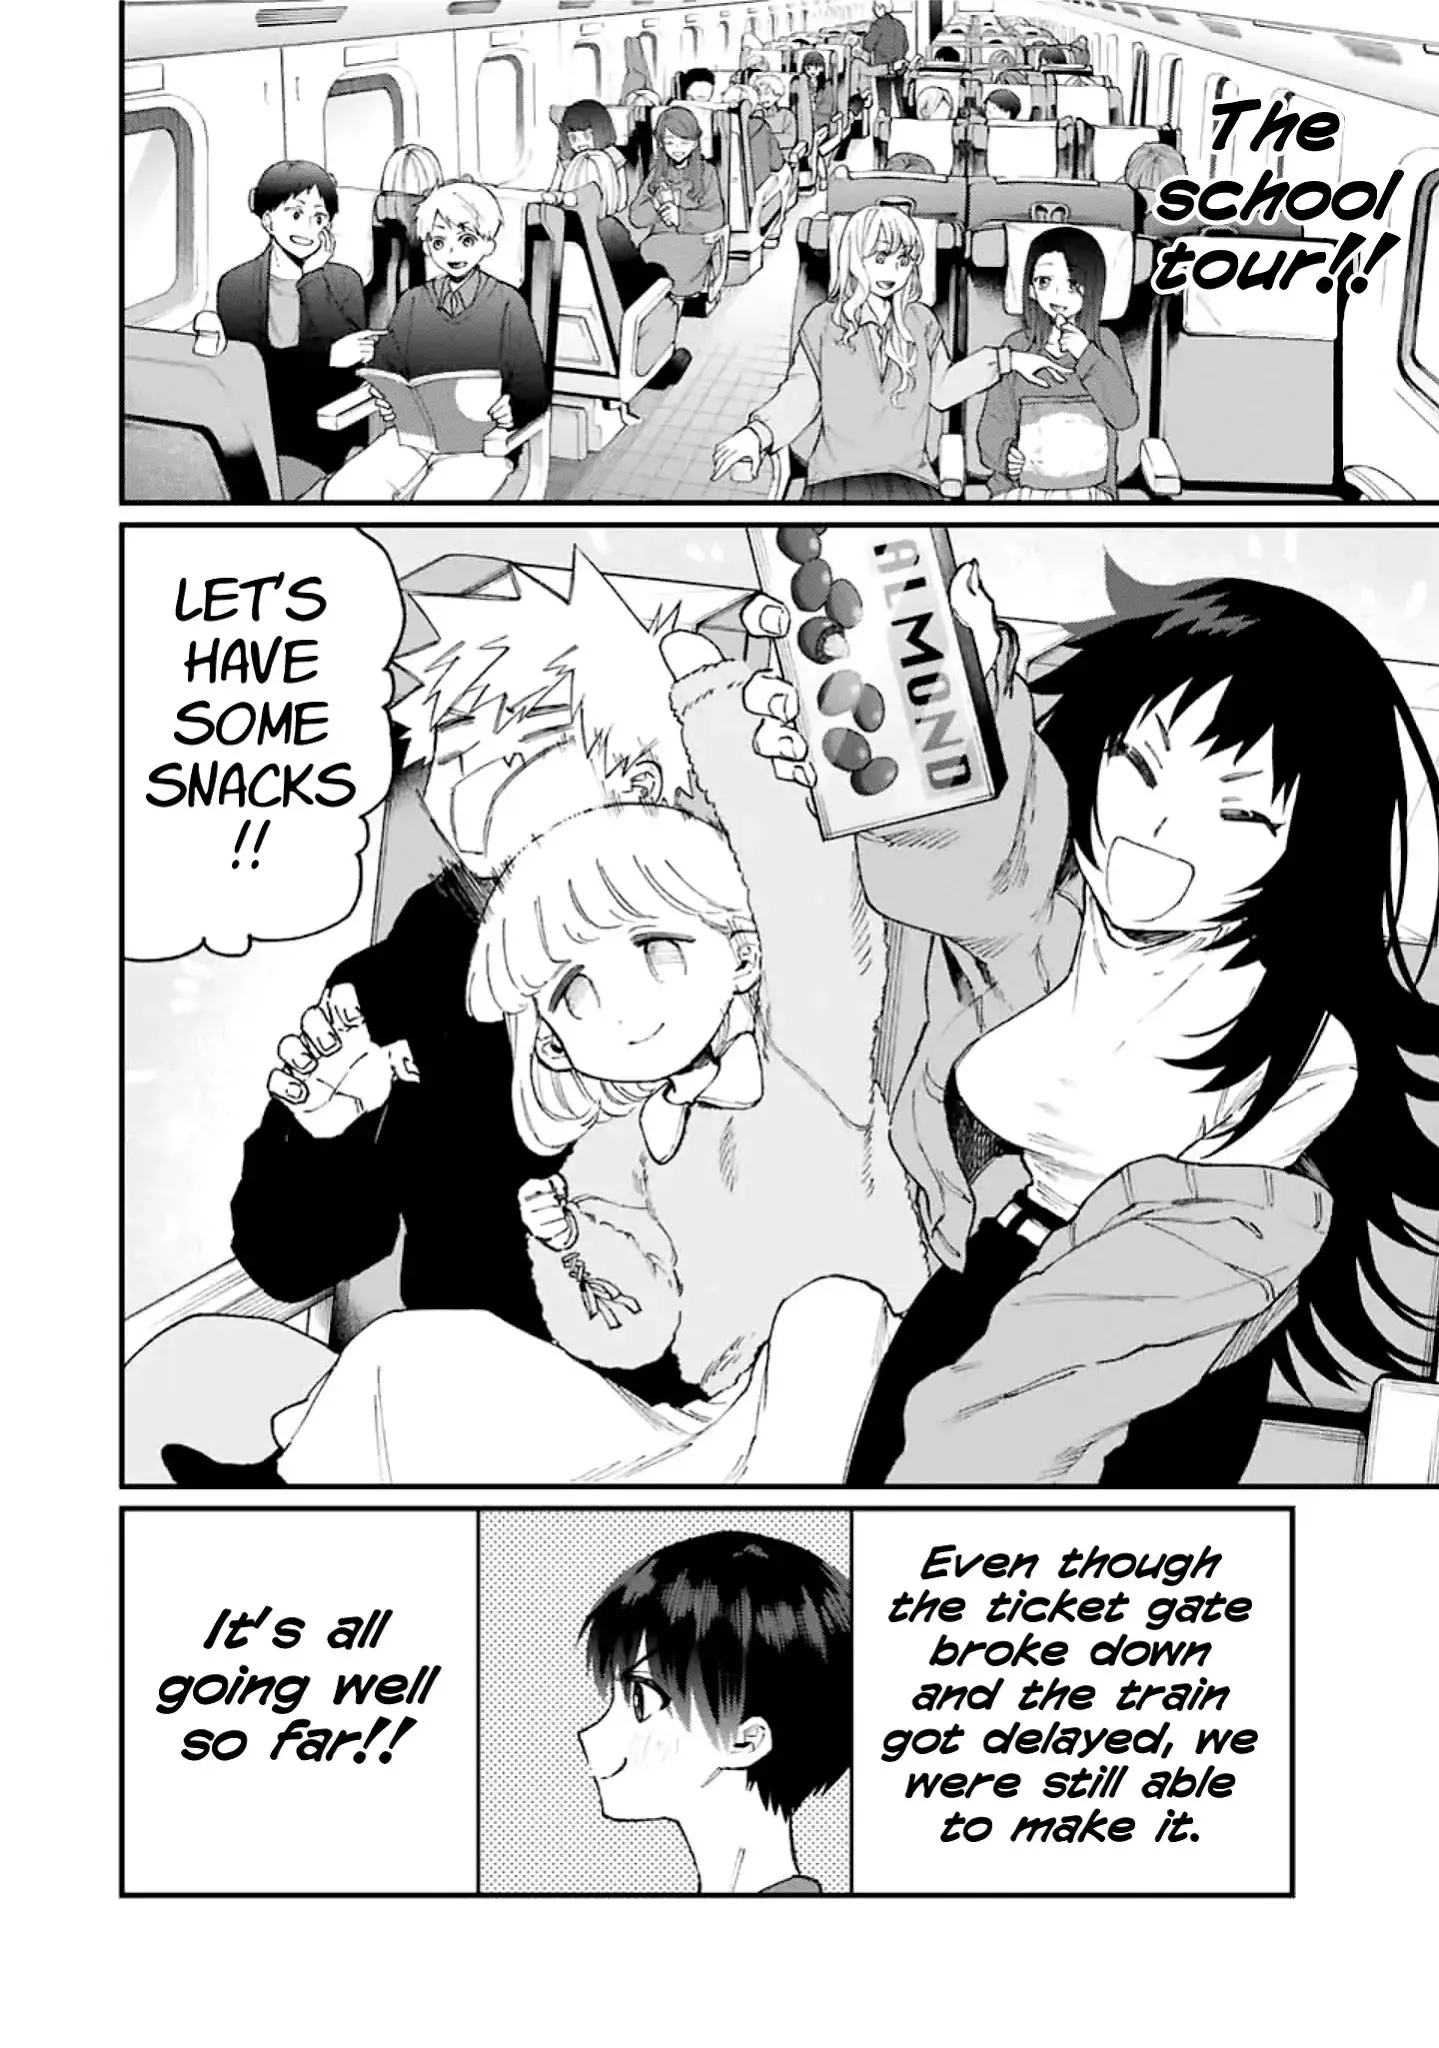 Shikimori's Not Just A Cutie - 89 page 3